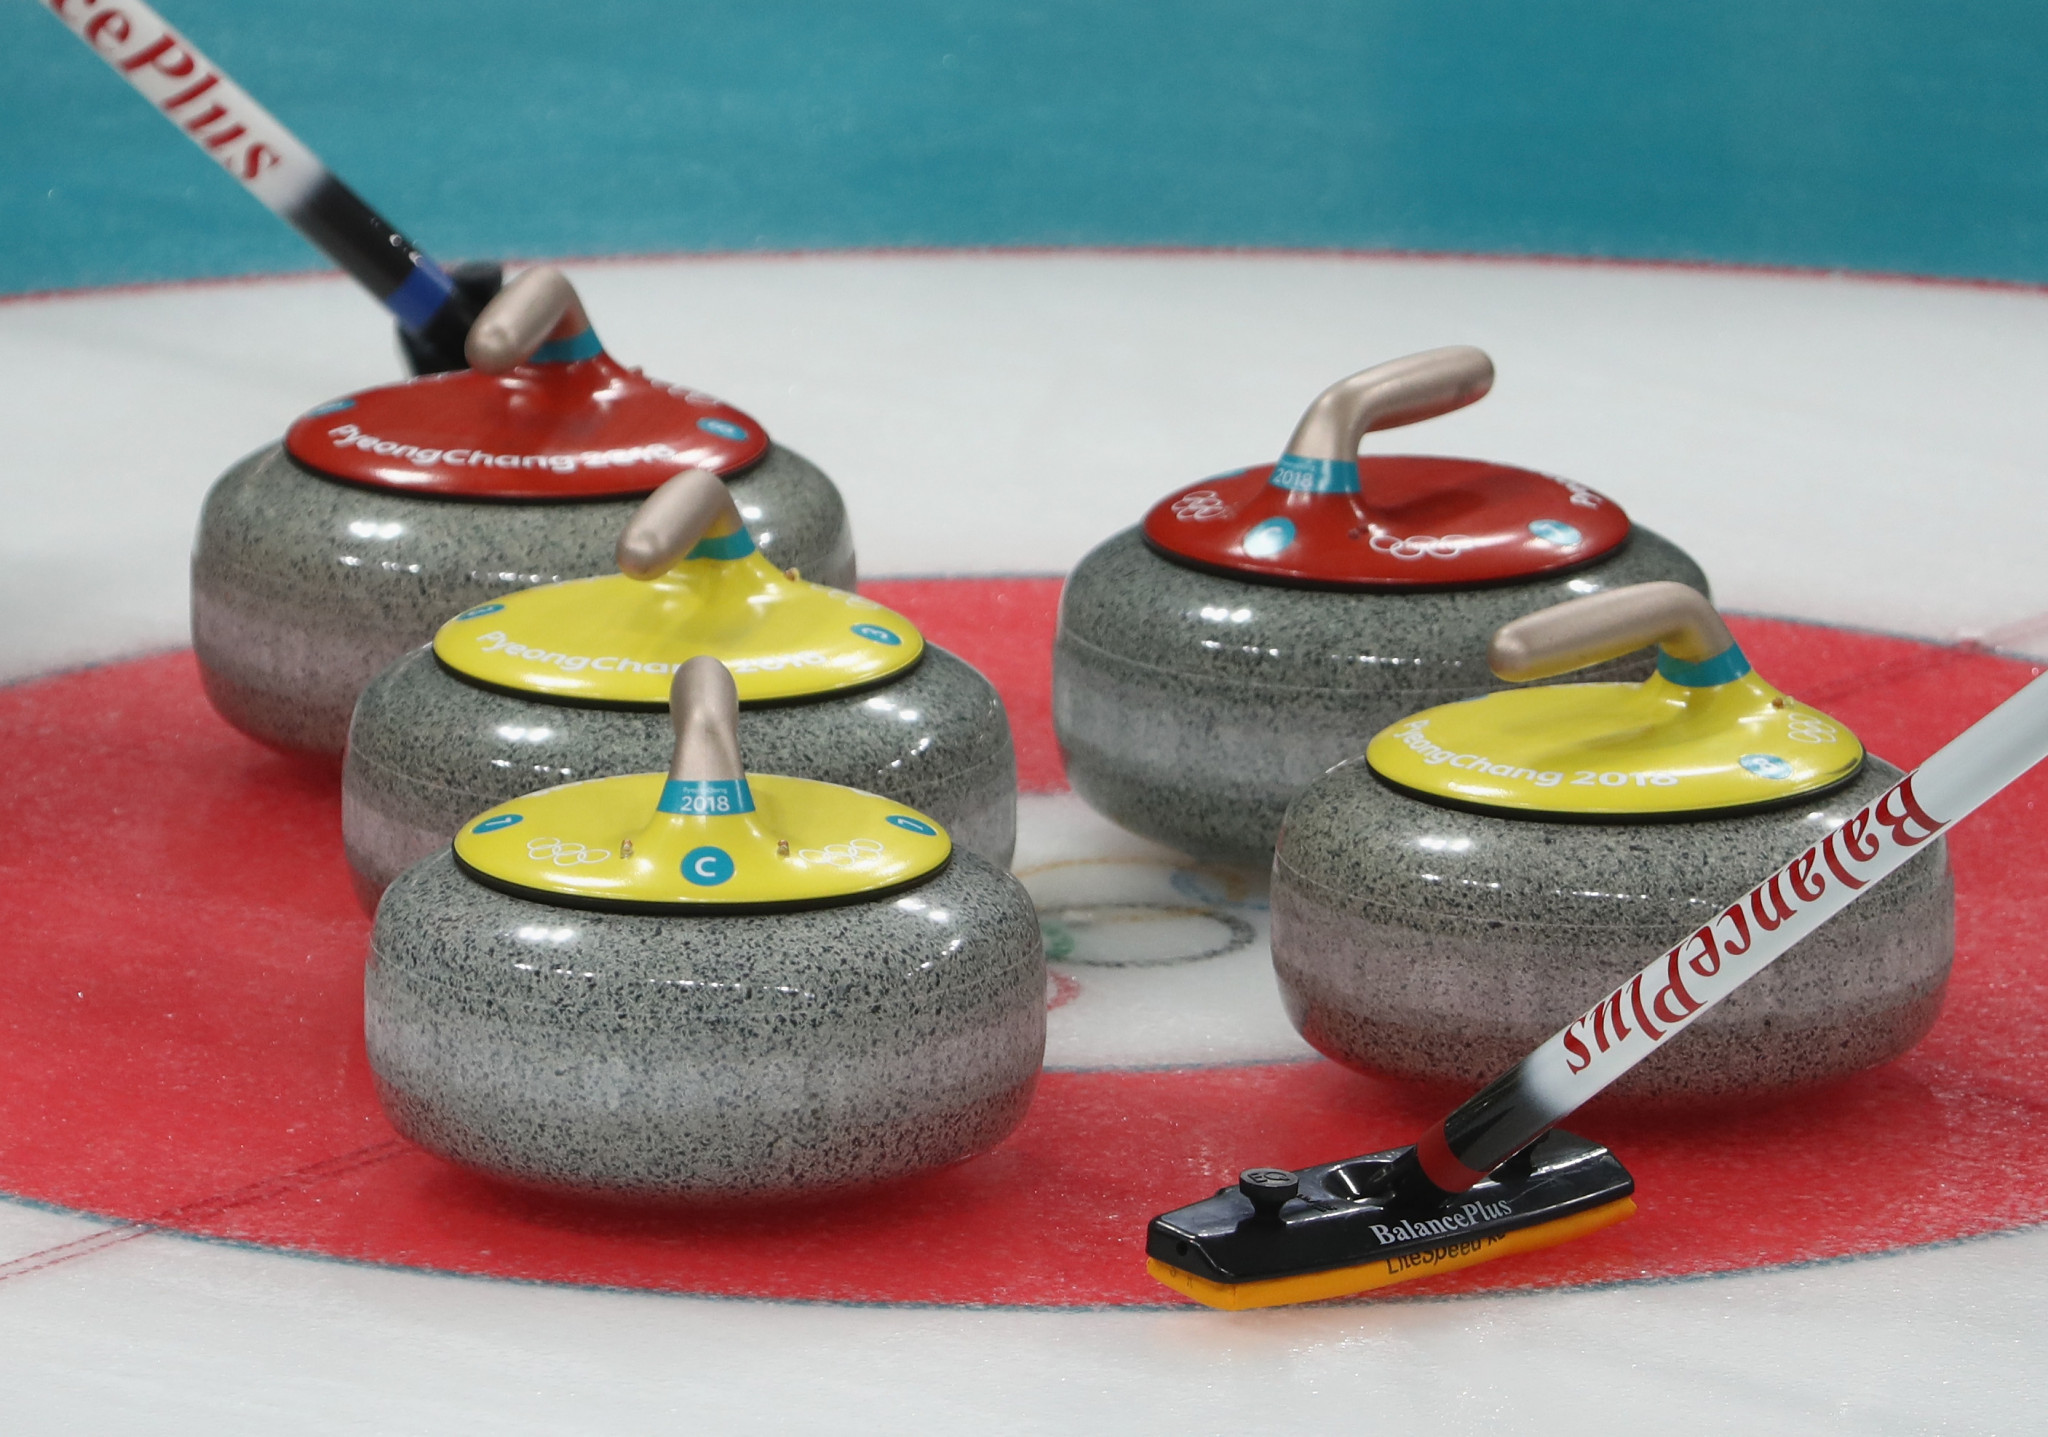 Jönköping to host 2022 World Junior Curling Championships